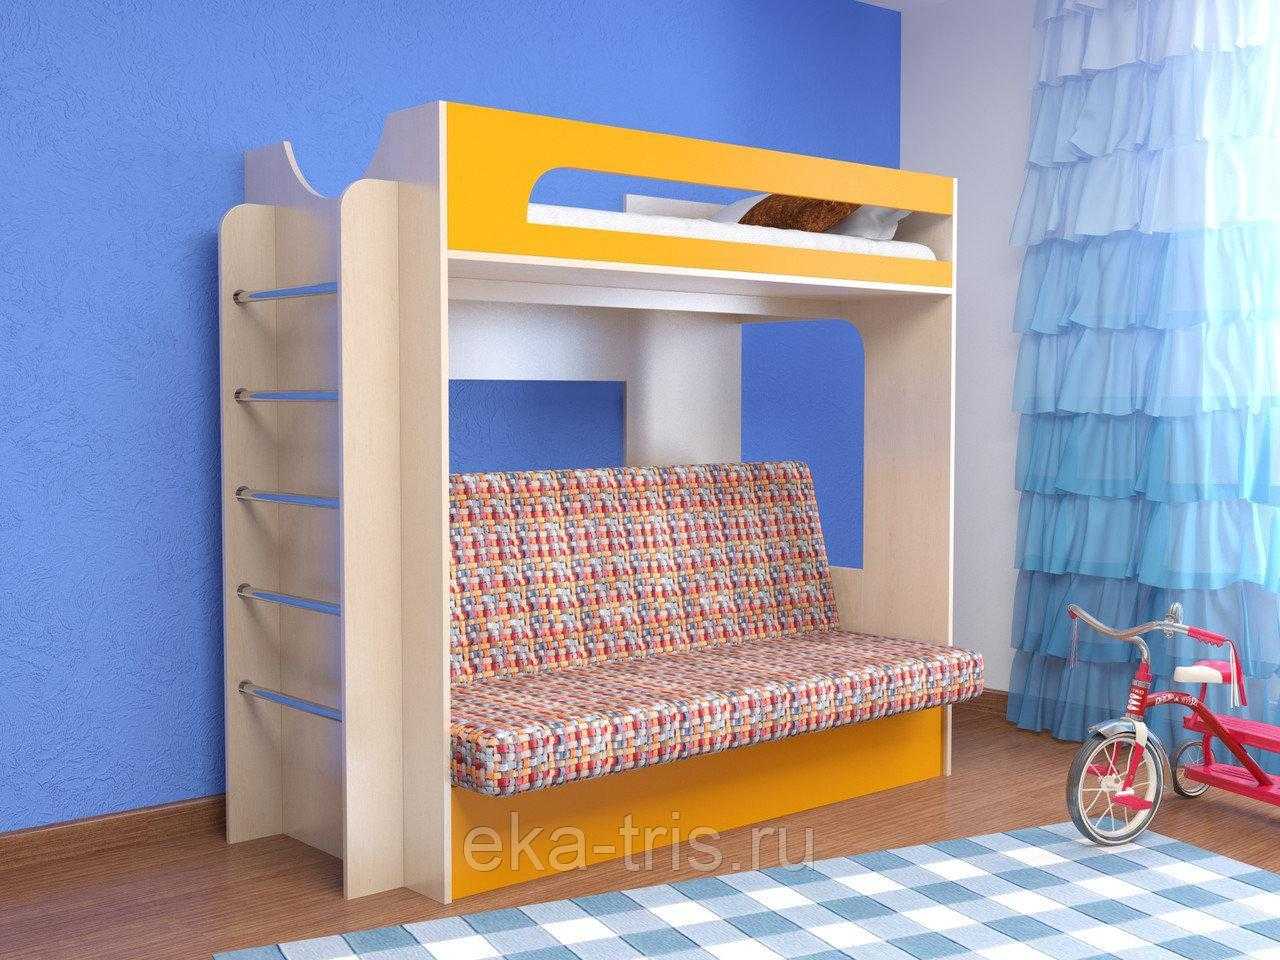 Двухъярусная кровать с диваном внизу — стильность и практичность (90+ фото)